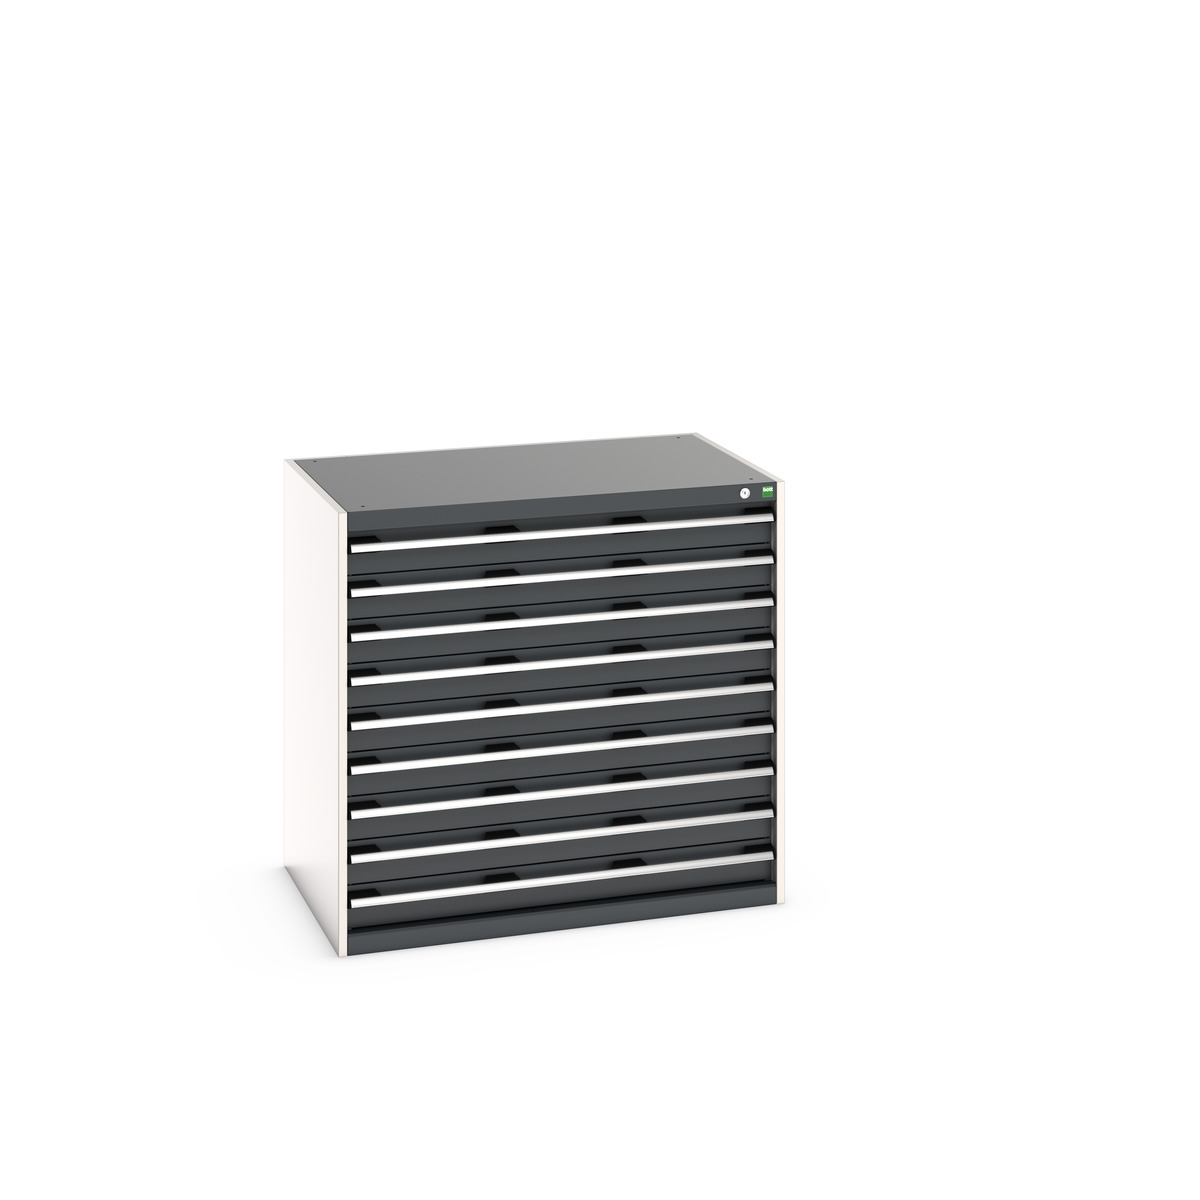 40029028.19V - cubio drawer cabinet